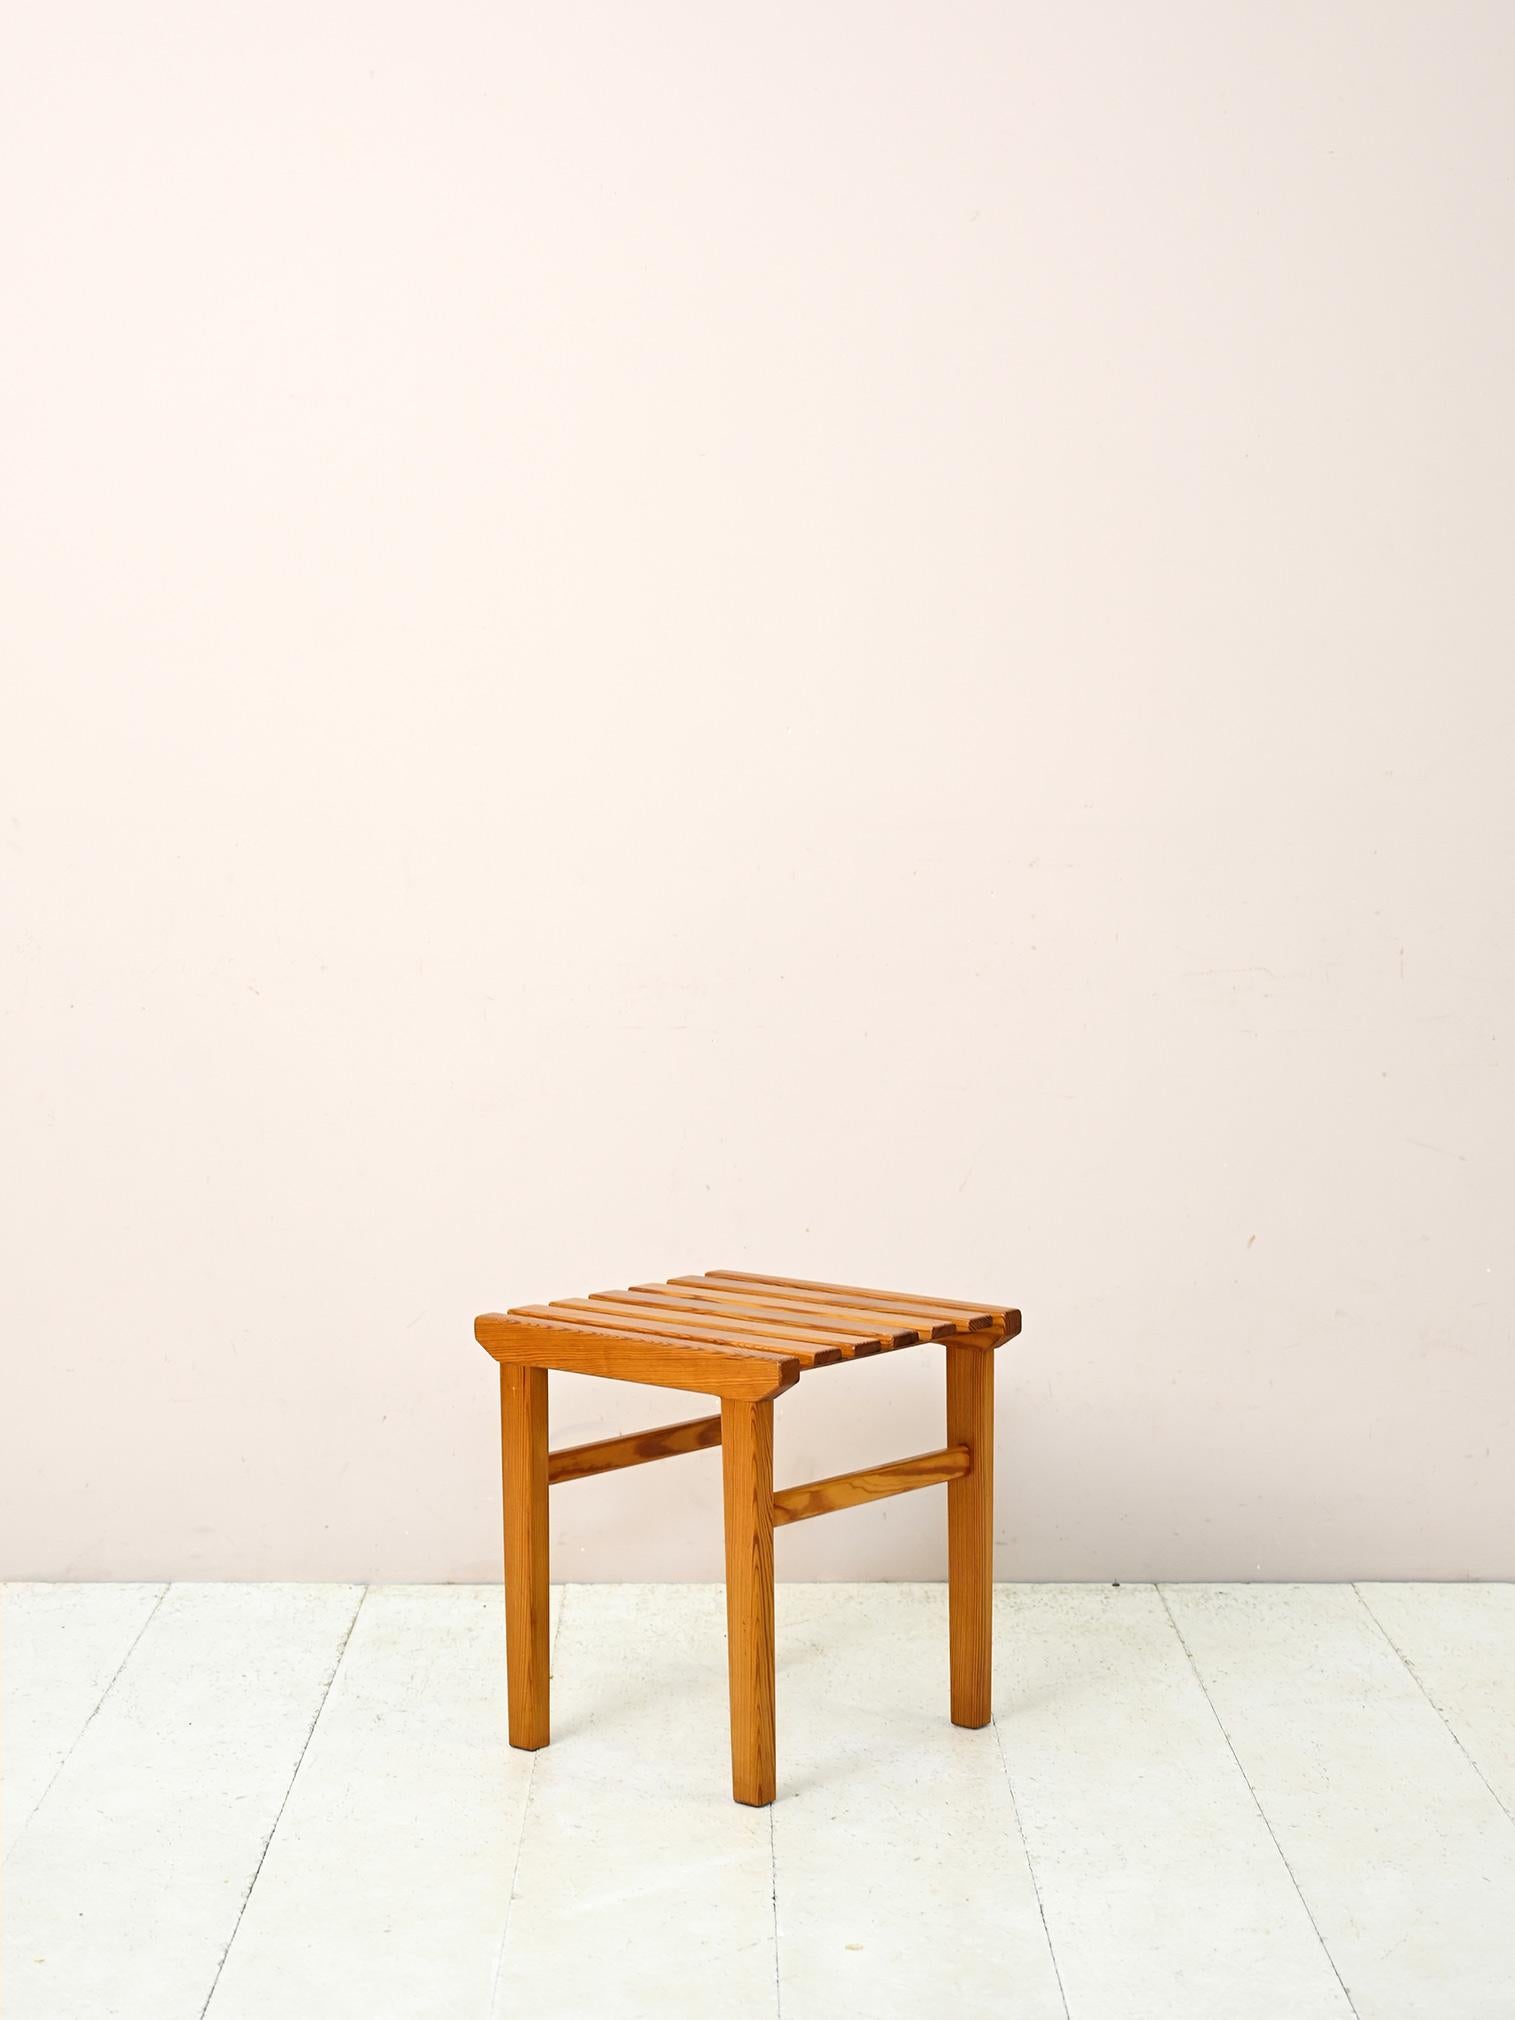 Tabouret scandinave original en bois de pin.

Un meuble simple et polyvalent au goût du jour. Il peut être utilisé comme siège ou comme rehausseur de plantes. Pour un look scandinave parfait, essayez de l'ajouter à une table avec des sièges de